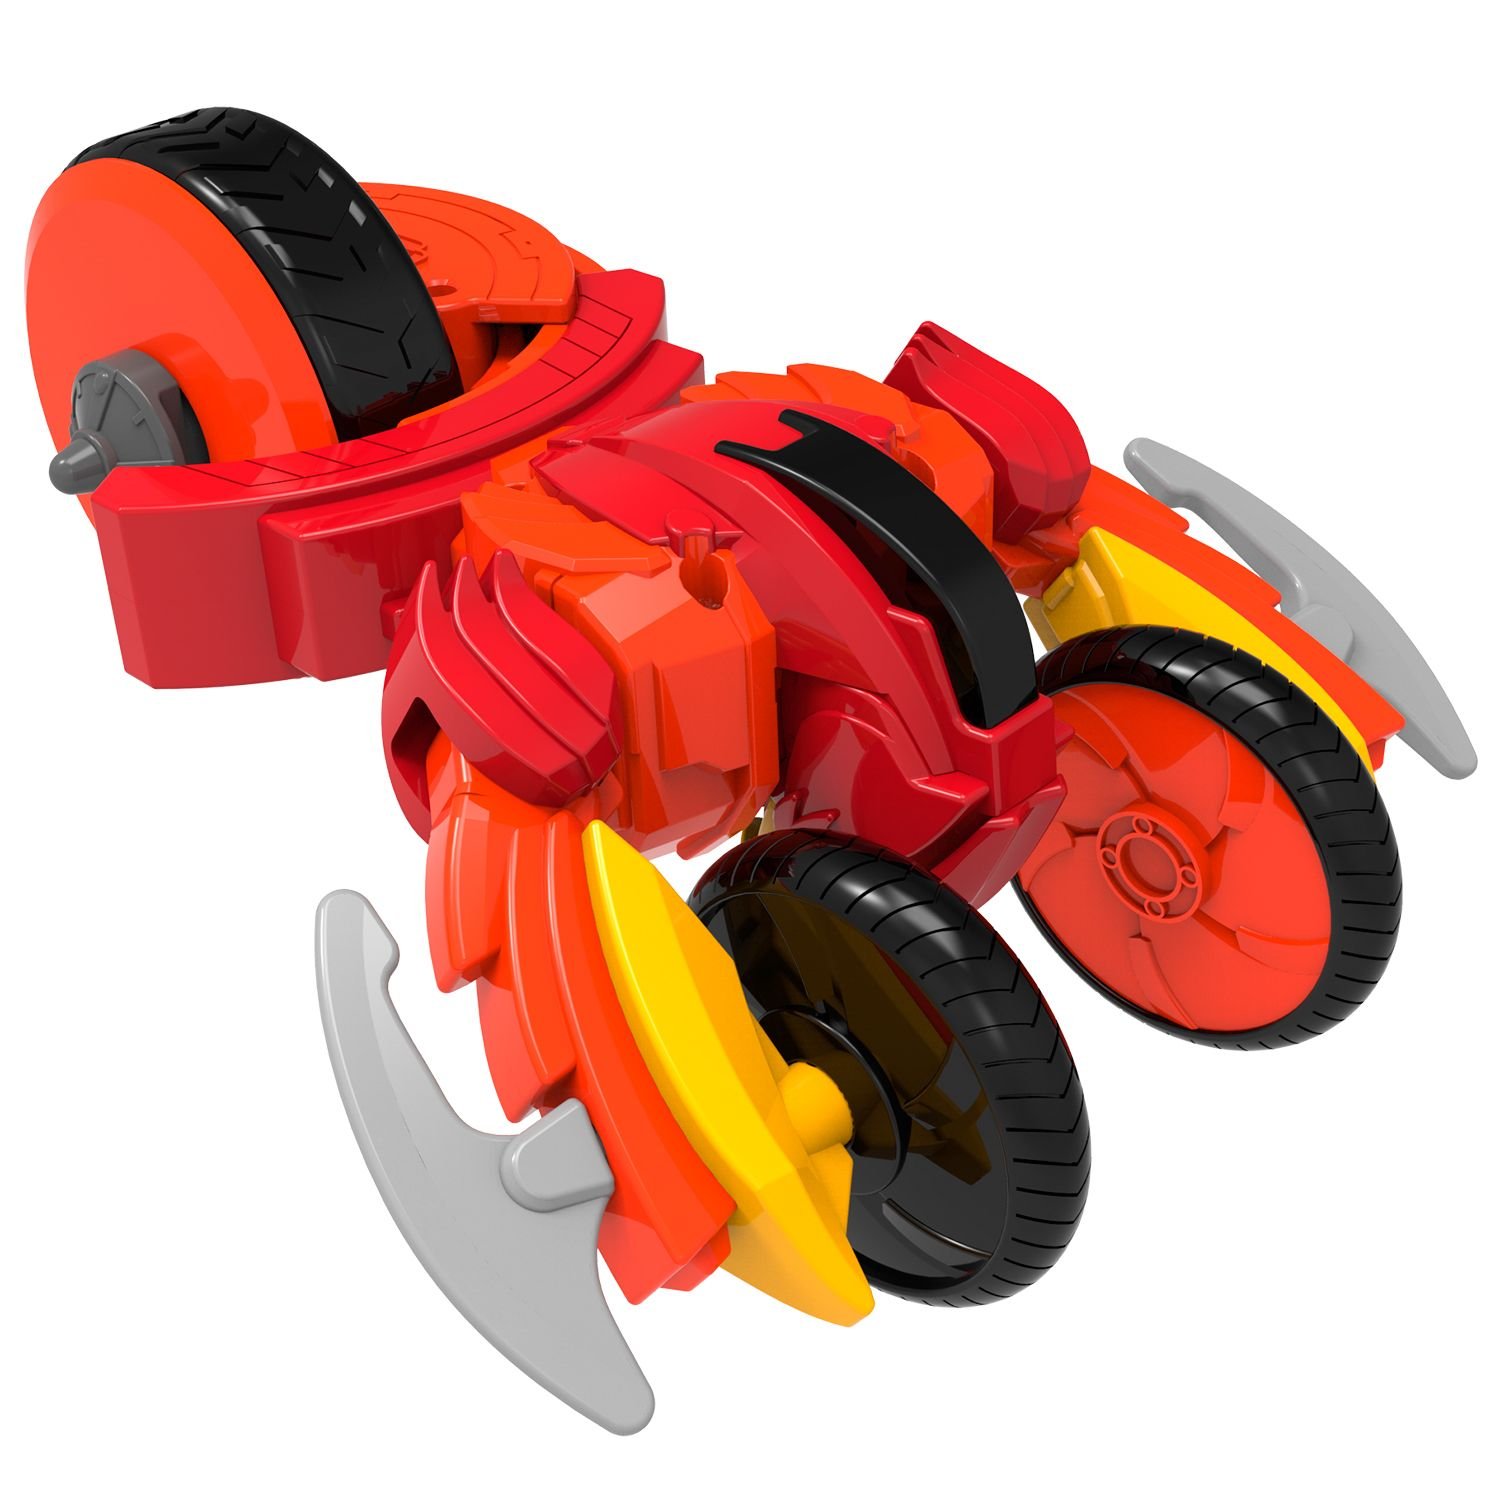 Игровой набор волчков-трансформеров 2 в 1 Spin Racers – Кинжал и Огнедышащий с аксессуарами  